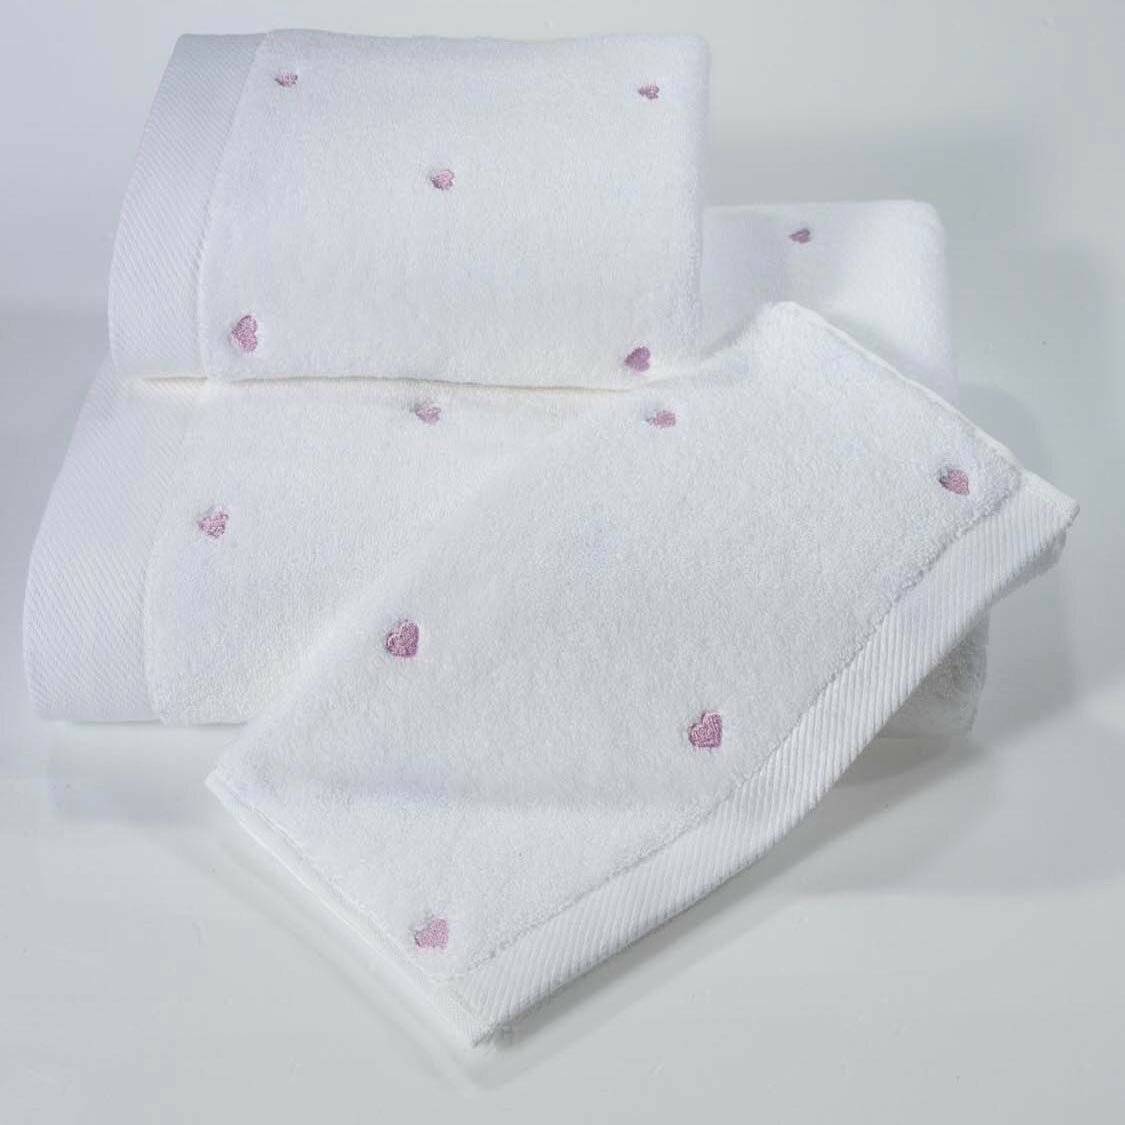 Soft cotton Полотенце Adelia цвет: белый, фиолетовый (50х100 см)